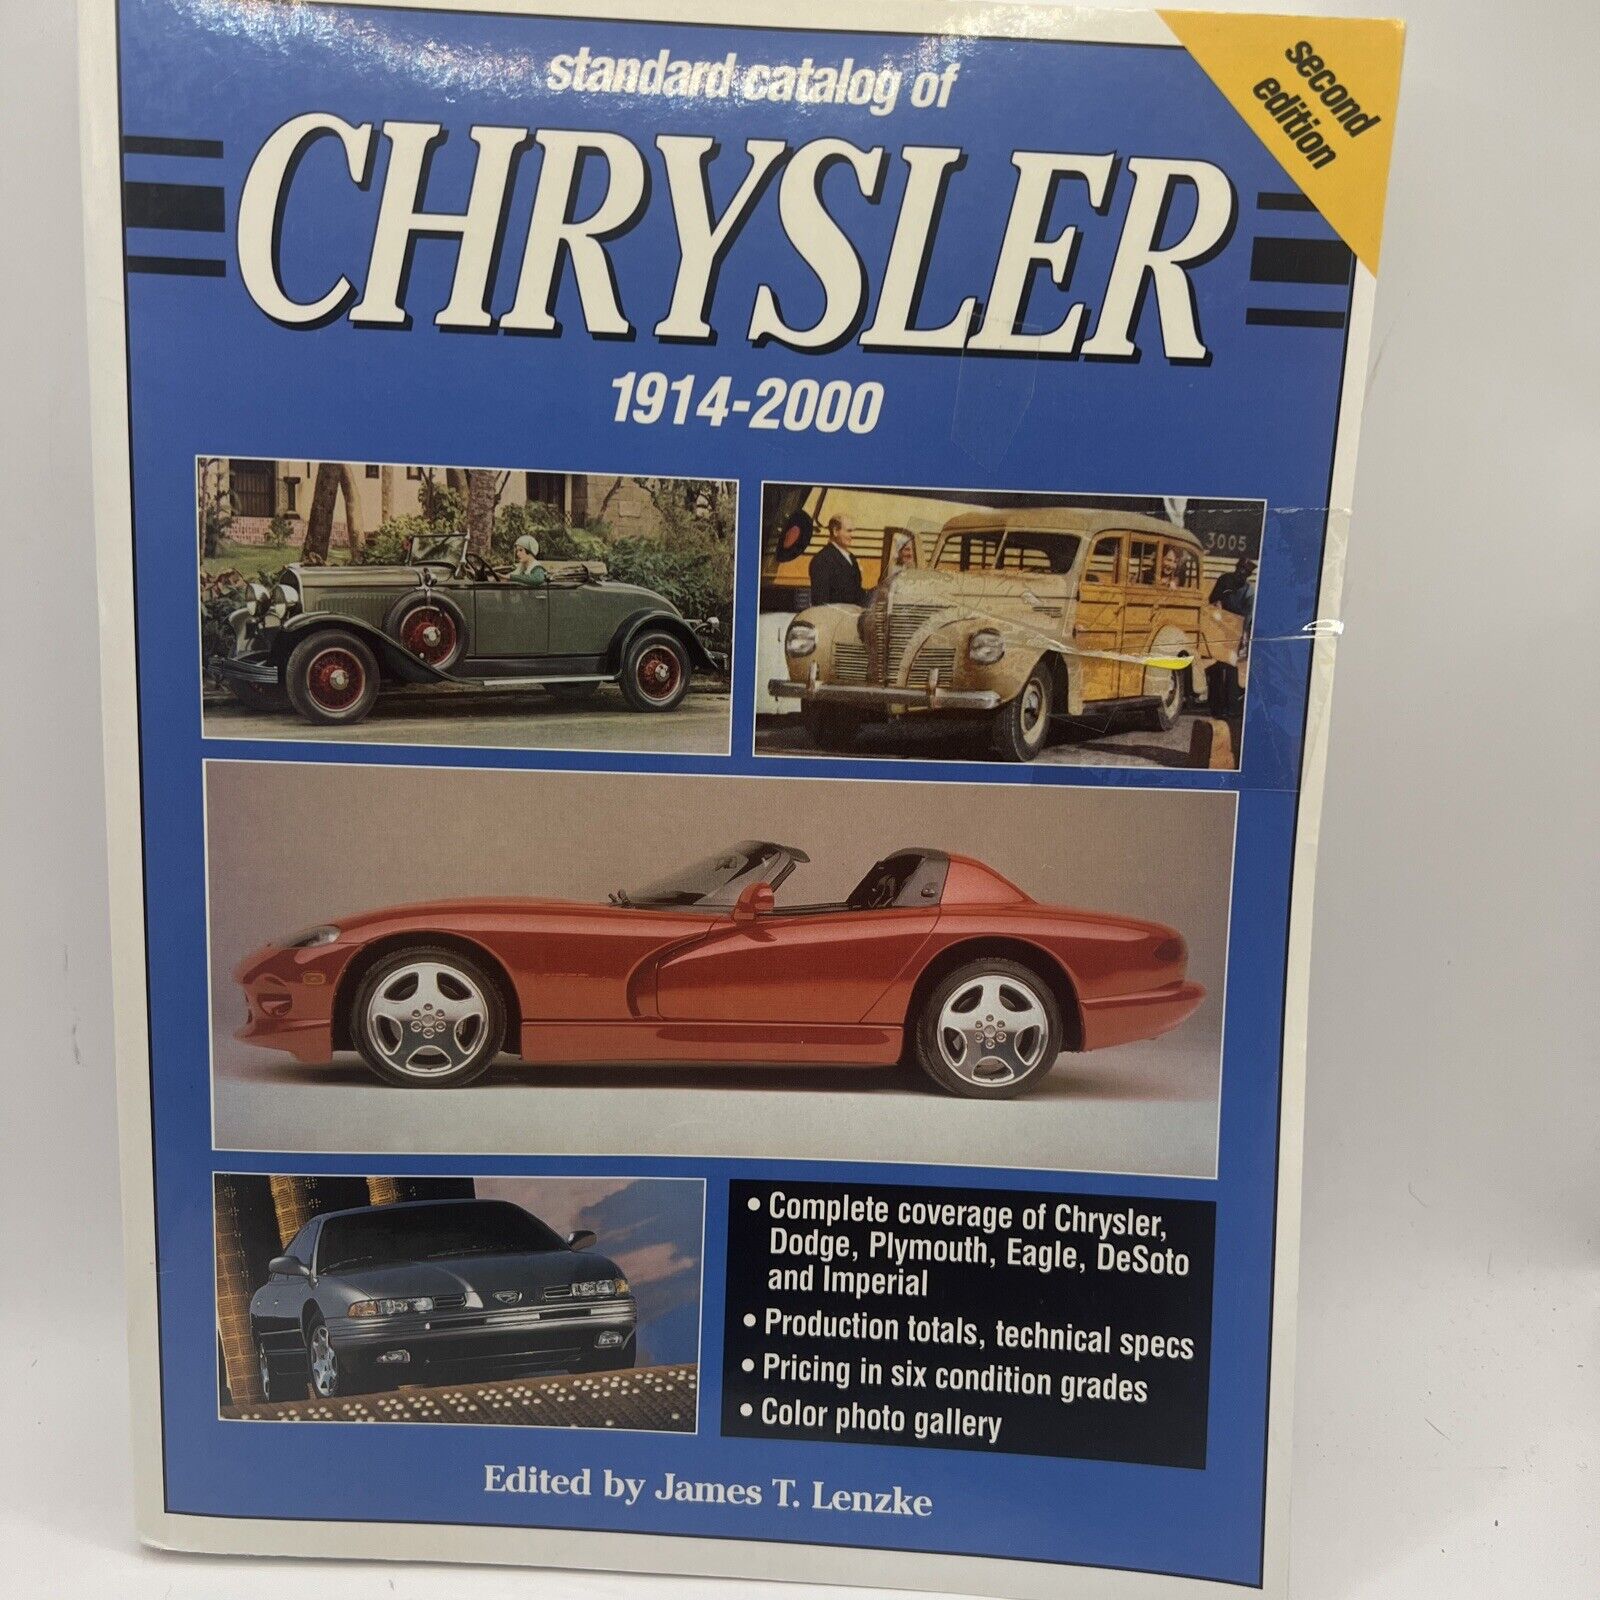 Standard Catalog of Chrysler, 1914-2000